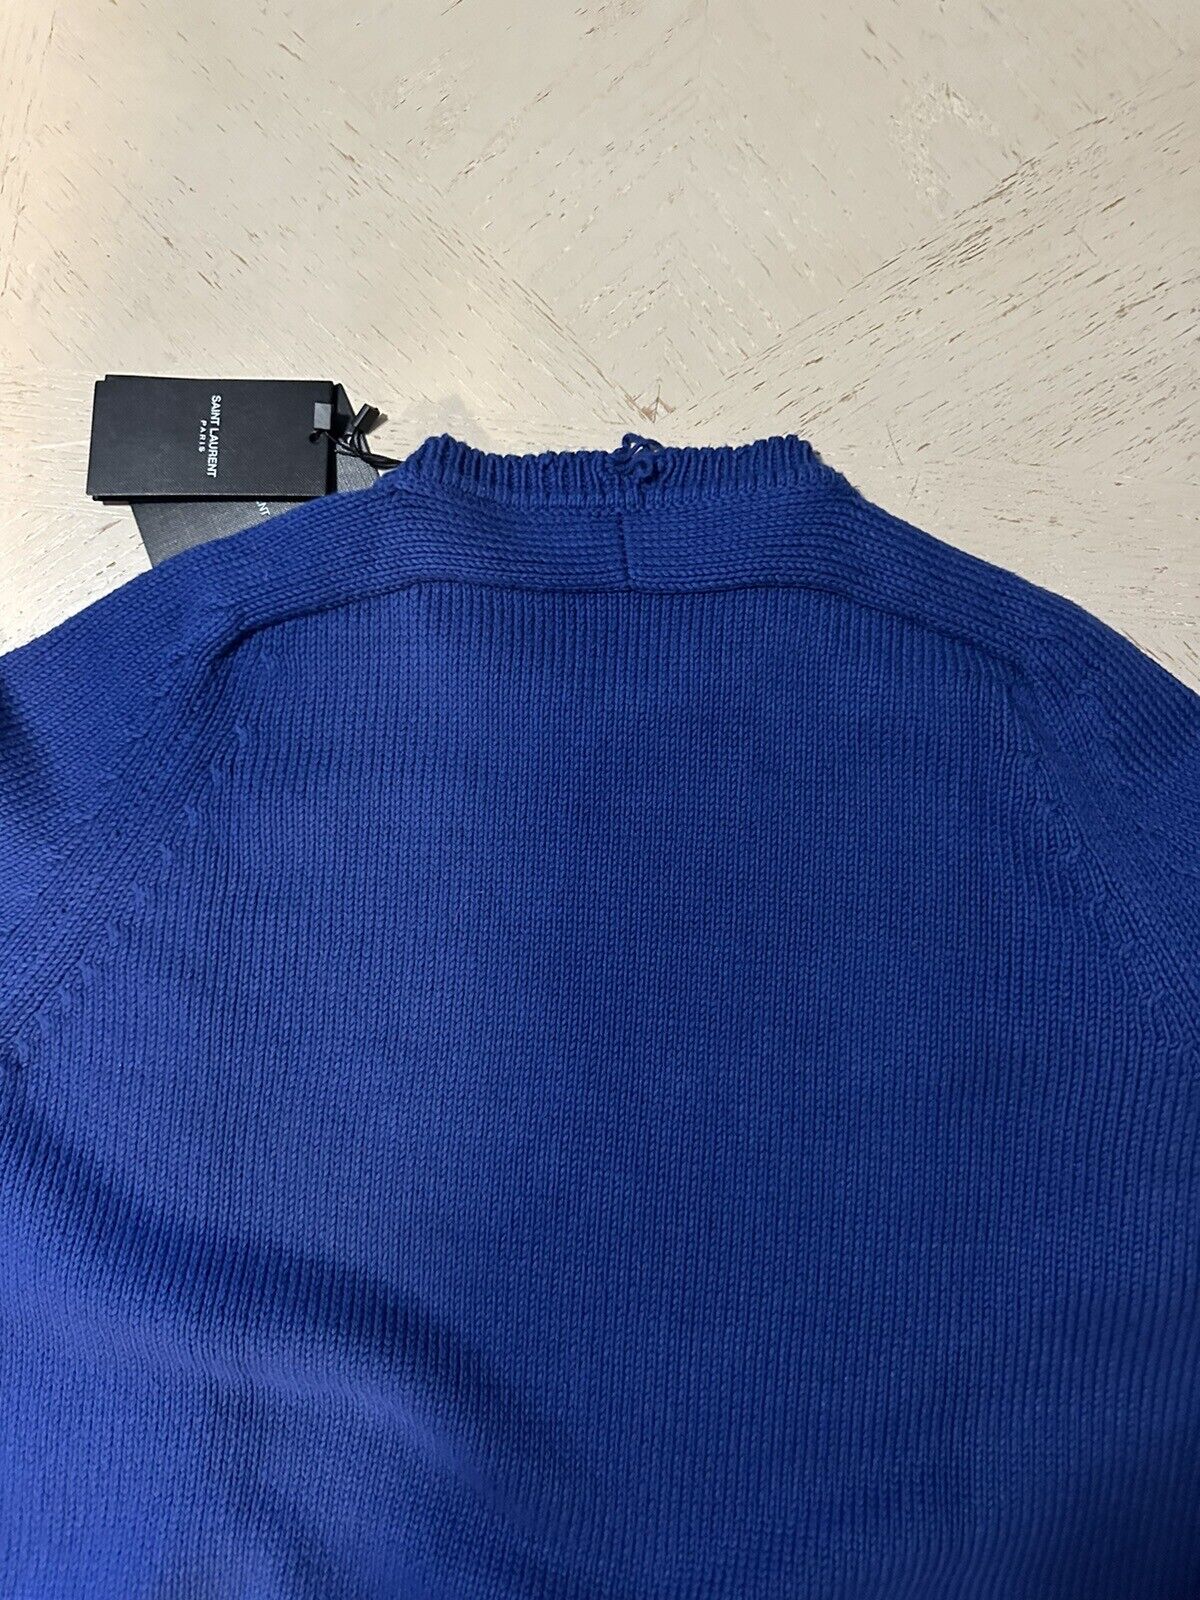 Neu mit Etikett: 890 $ Saint Laurent Herrenpullover mit Rundhalsausschnitt, Blau, Größe XXL, Italien